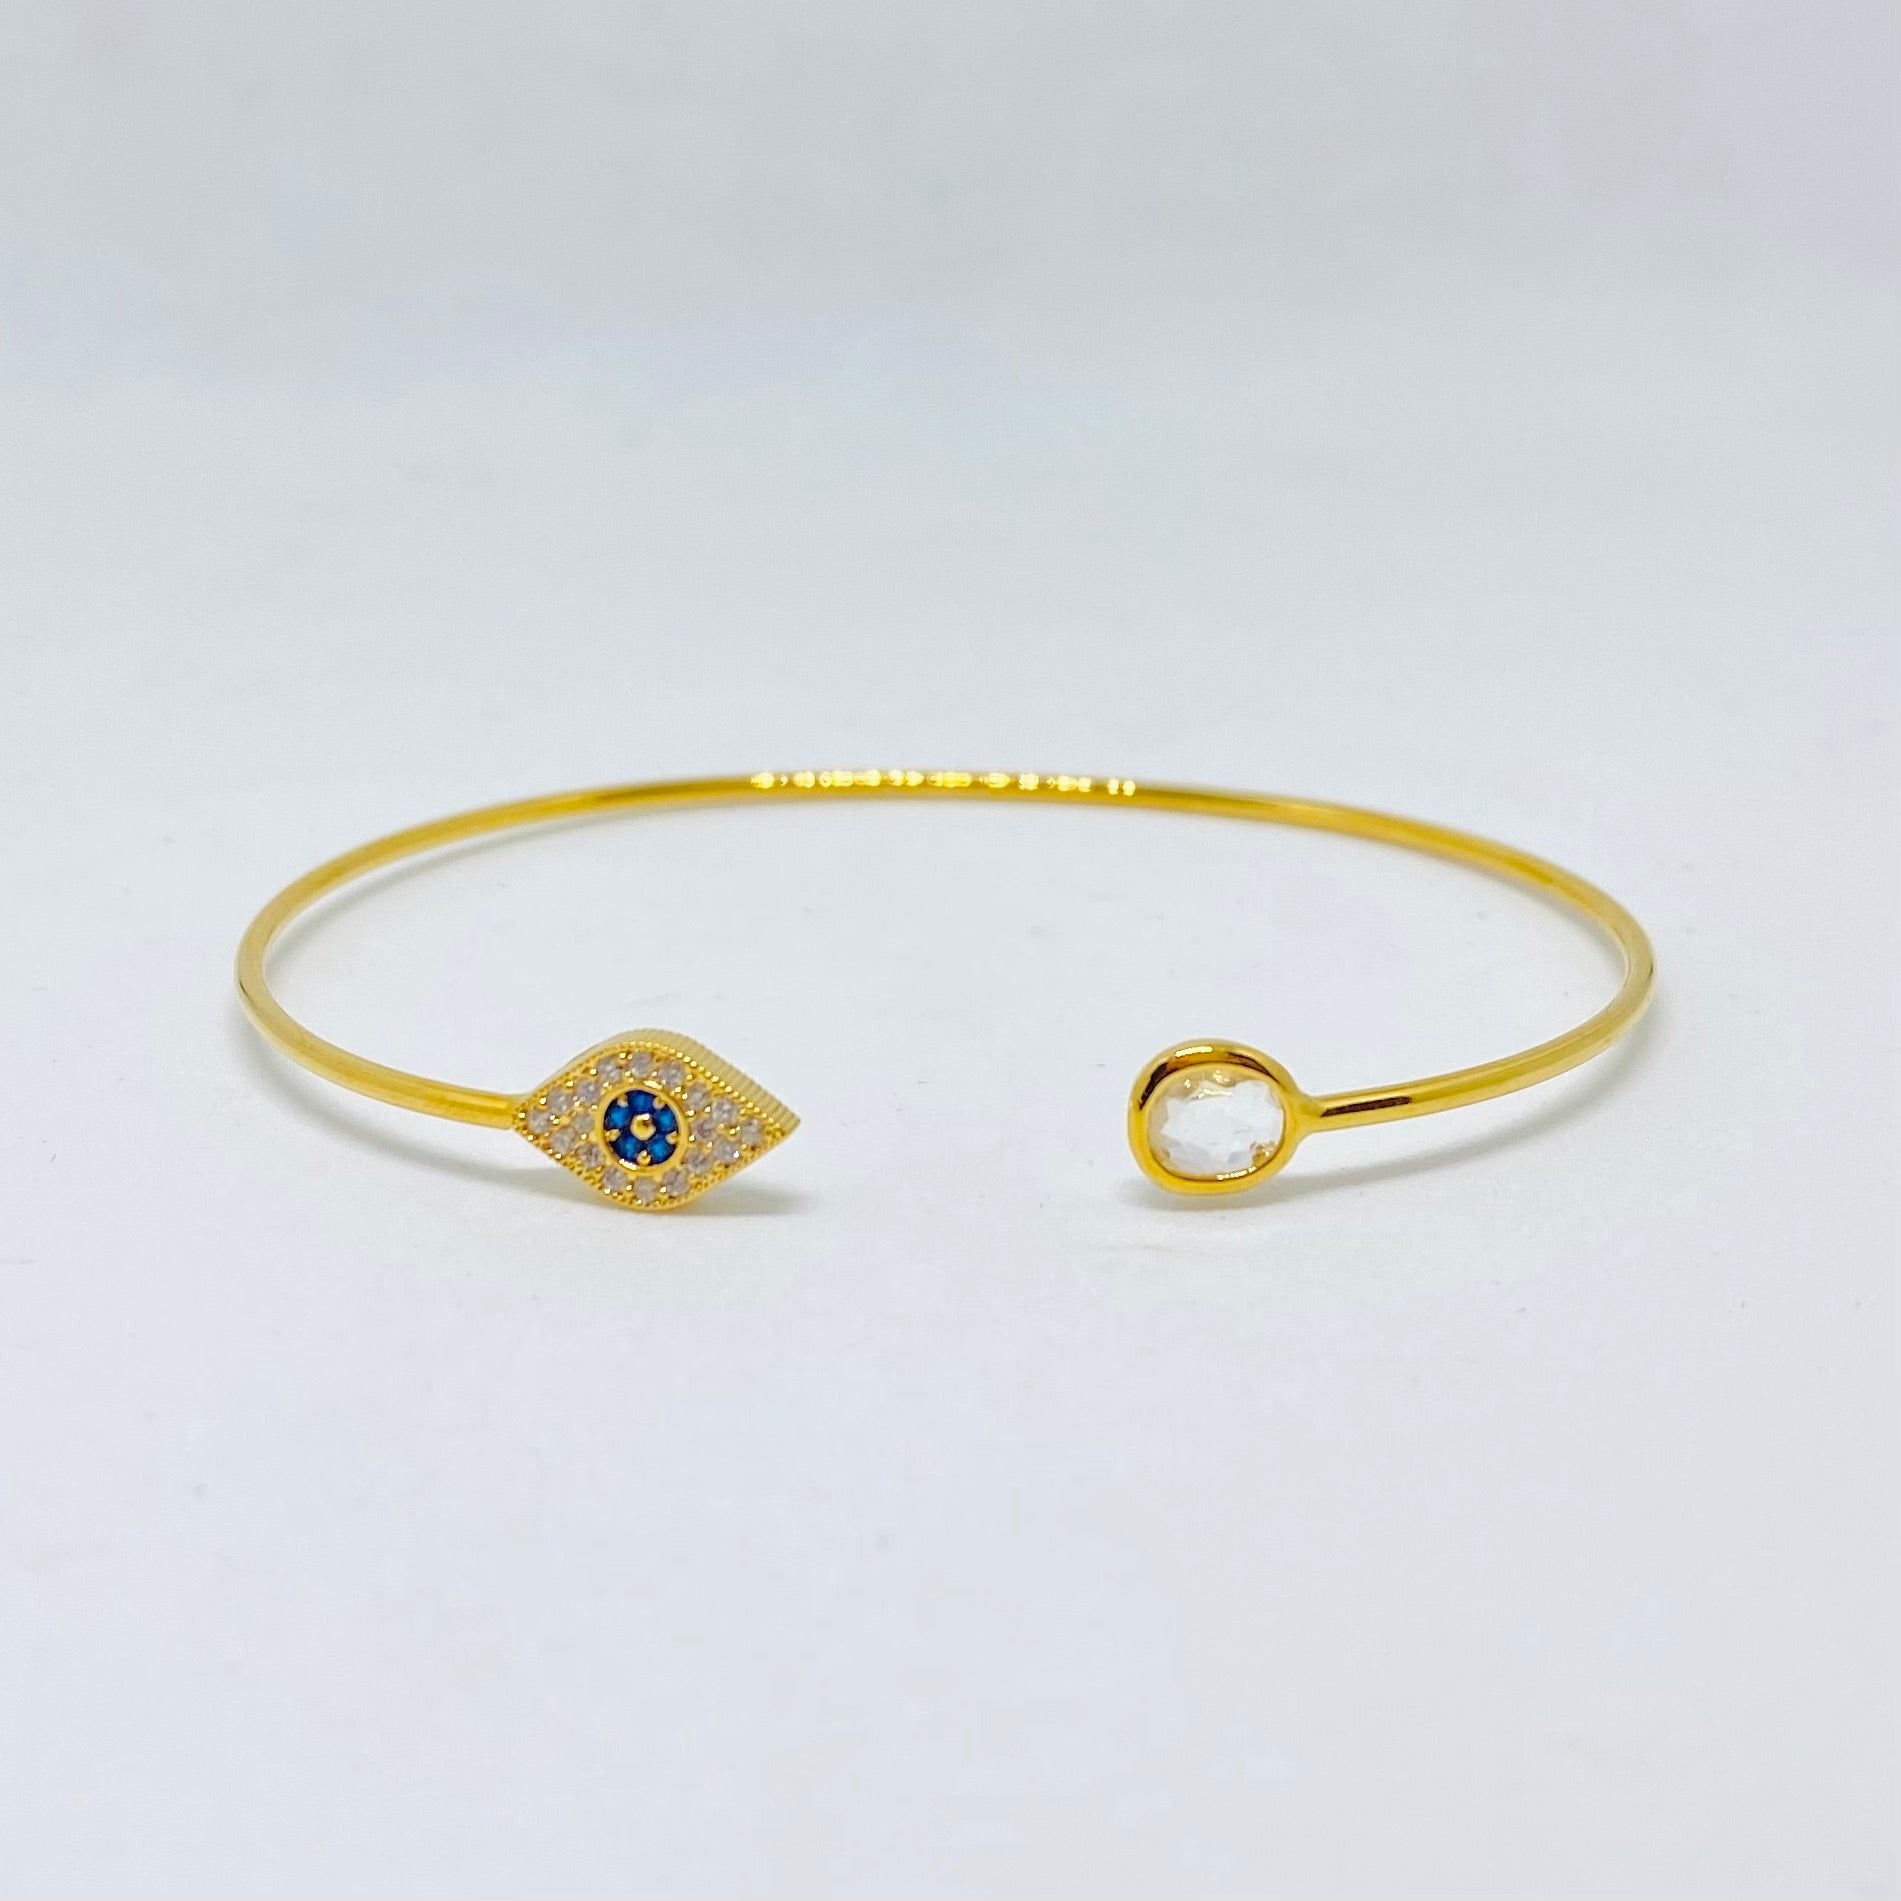 Tai - Evil eye with oval stone cuff bracelet